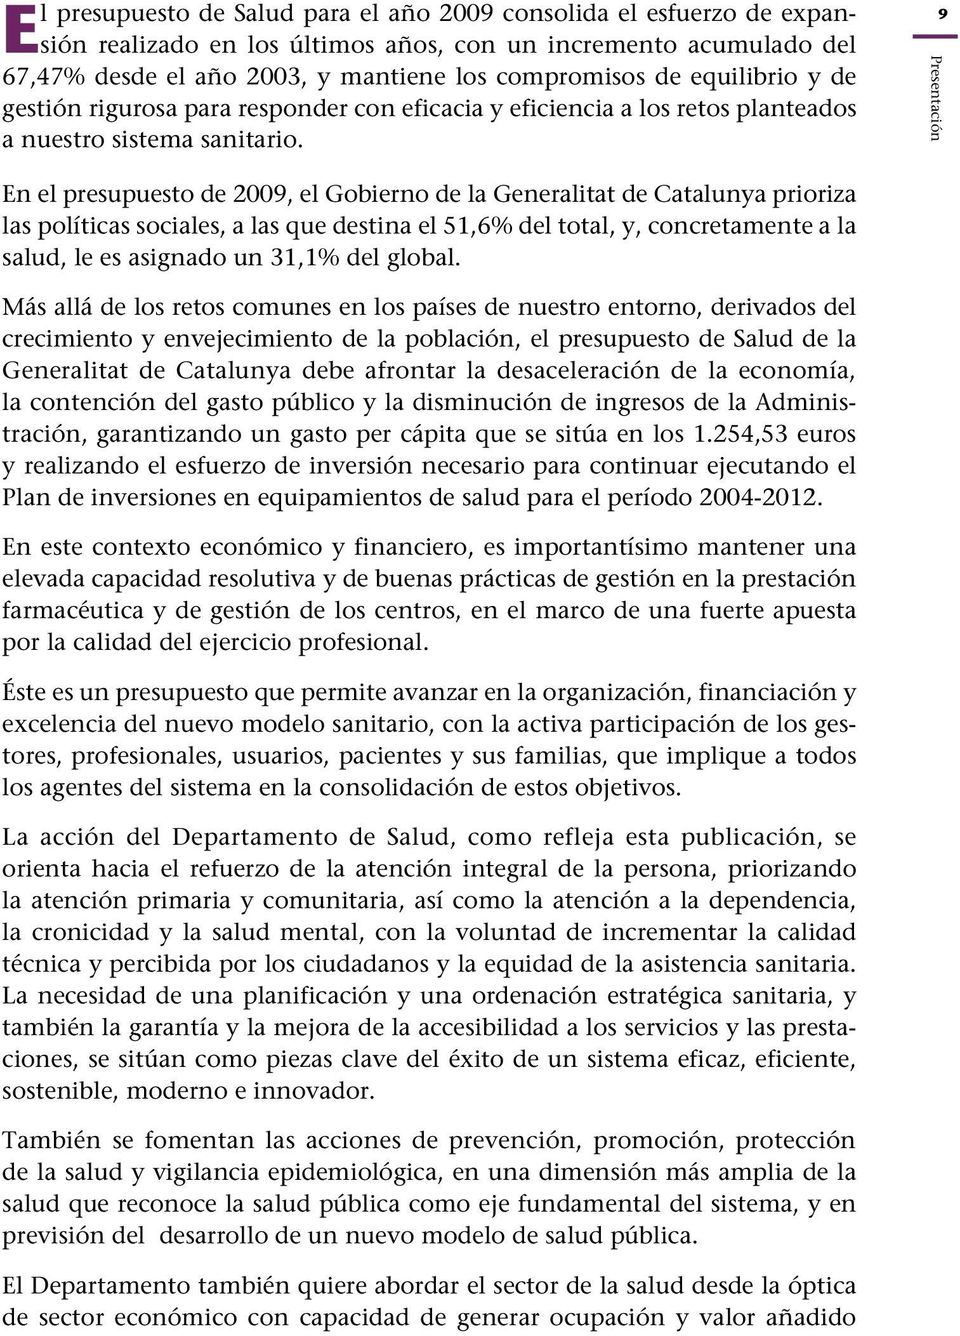 9 Presentación En el presupuesto de 2009, el Gobierno de la Generalitat de Catalunya prioriza las políticas sociales, a las que destina el 51,6% del total, y, concretamente a la salud, le es asignado